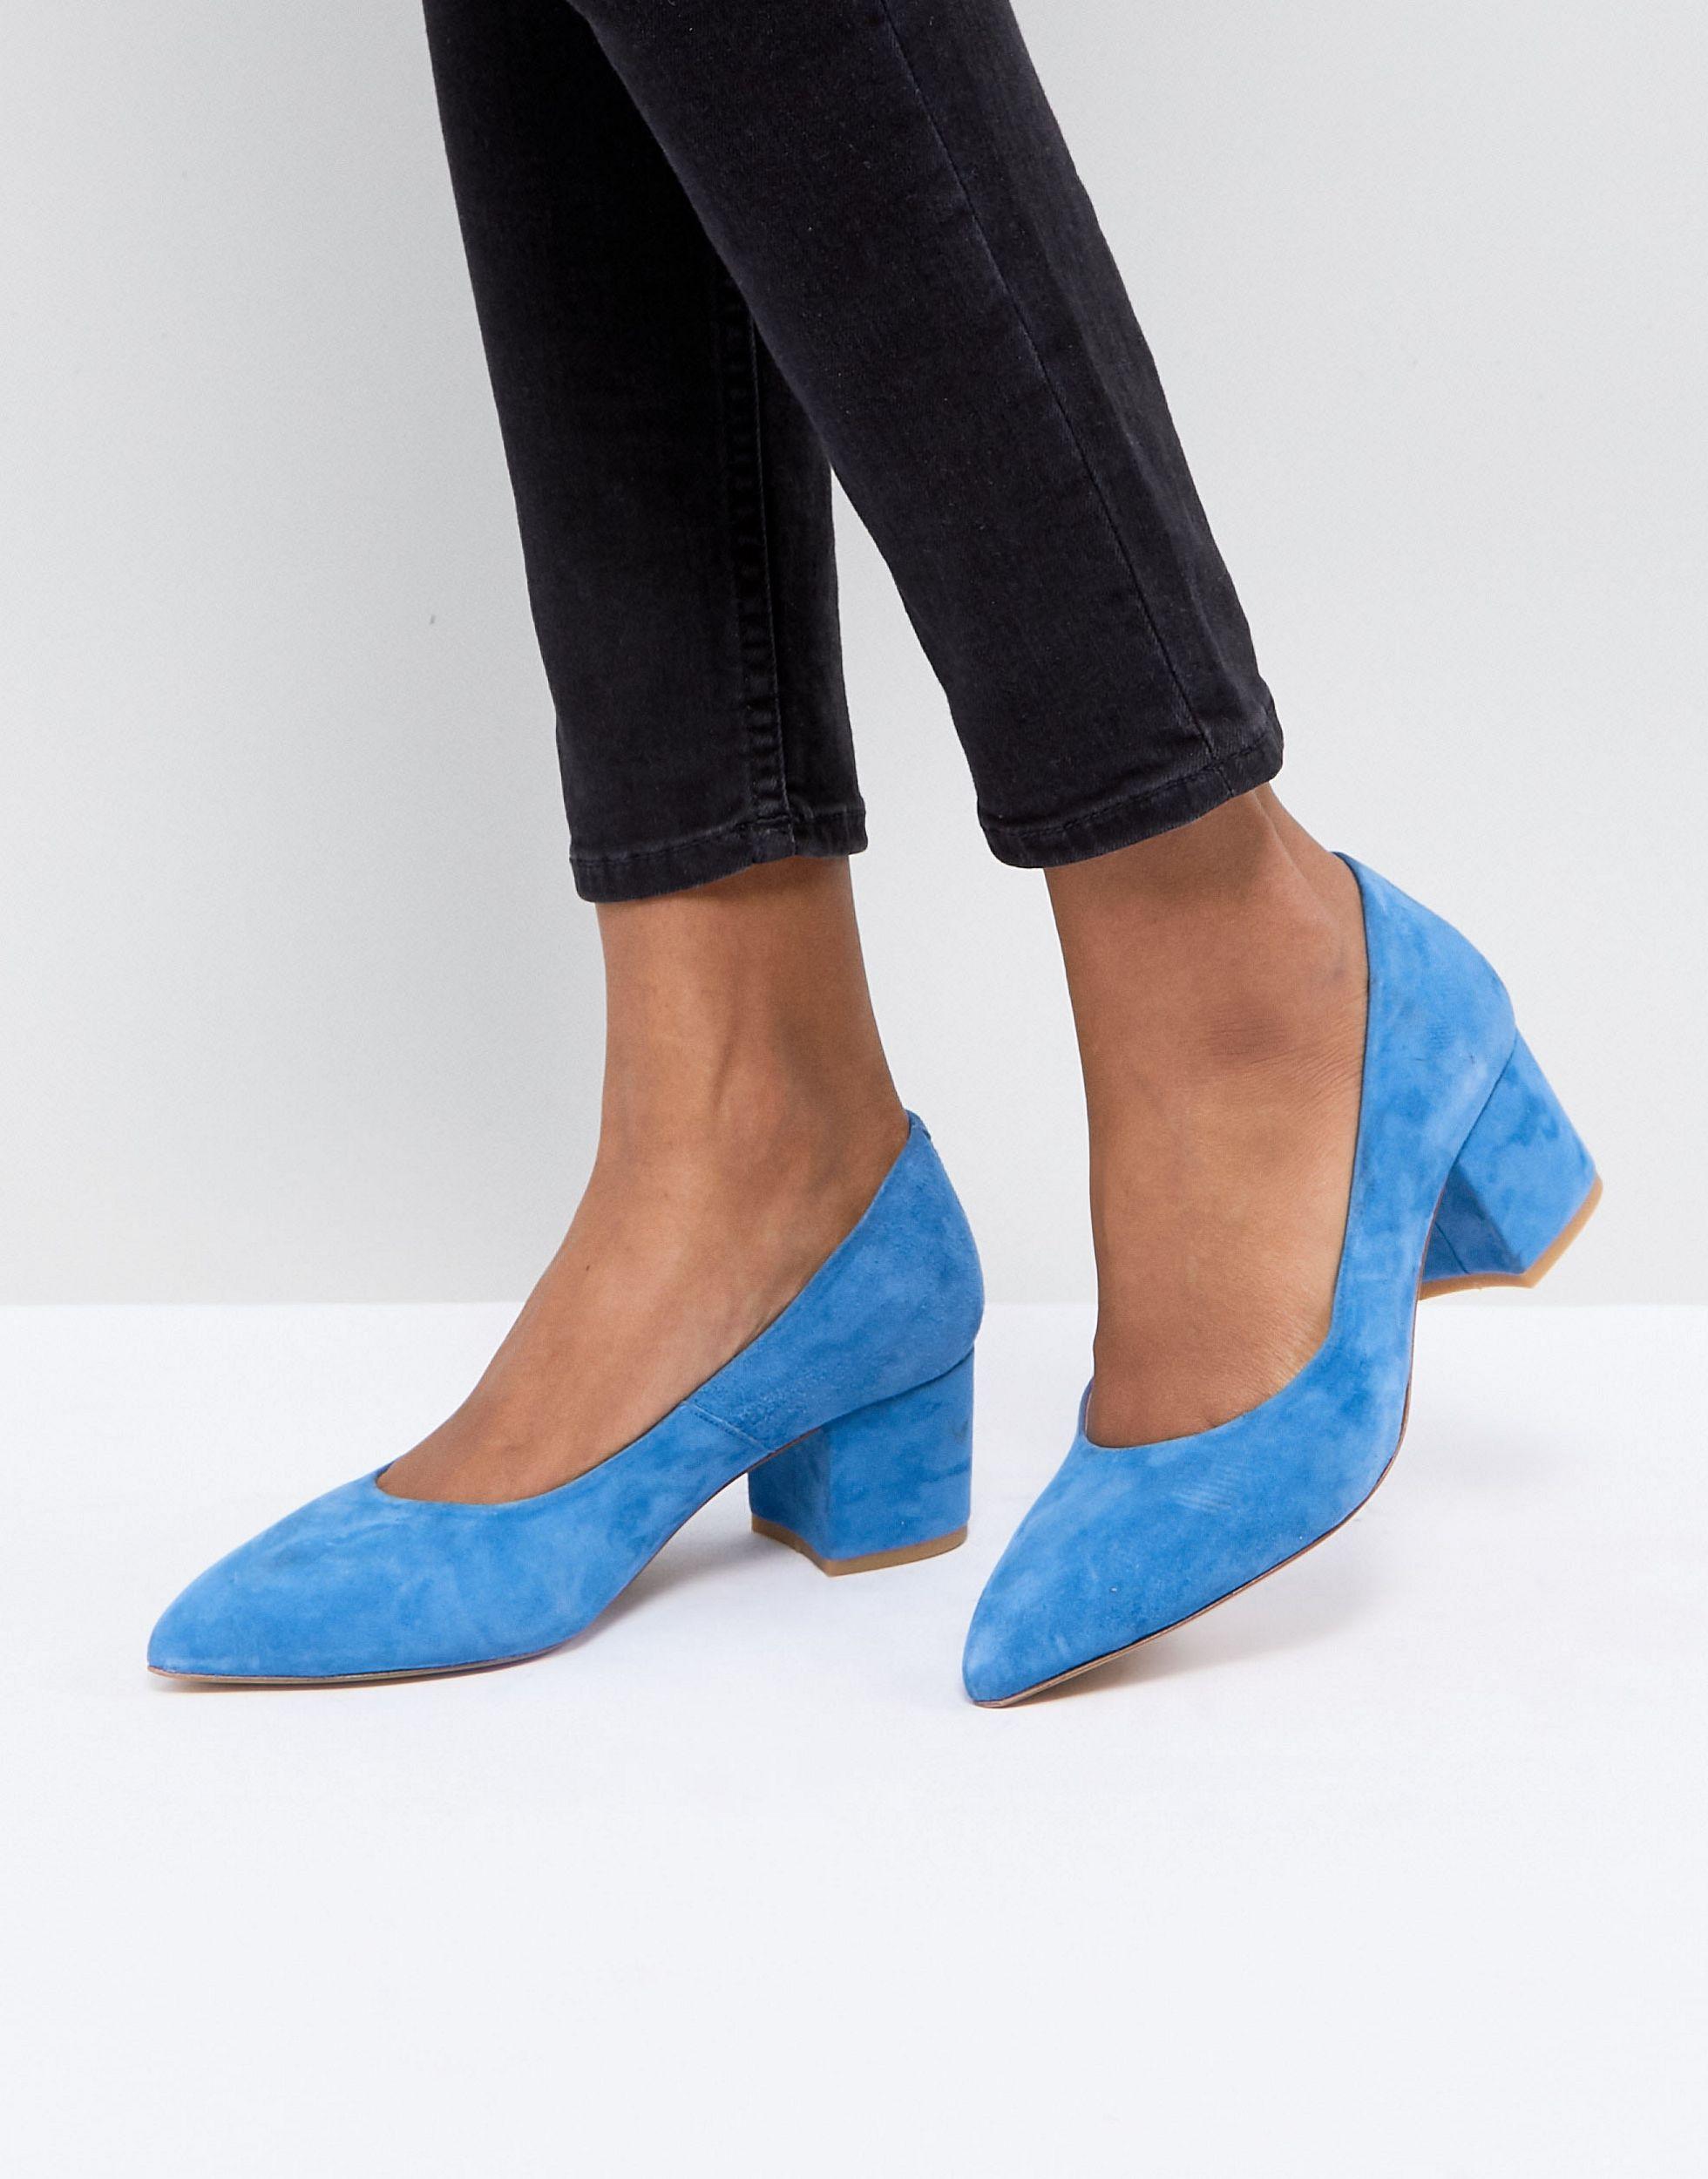 Замшевые туфли женские на низком. Туфли Эконика синие замшевые. Evita женские туфли замша синие. Aaltonen туфли замшевые. Синие замшевые туфли на каблуке.